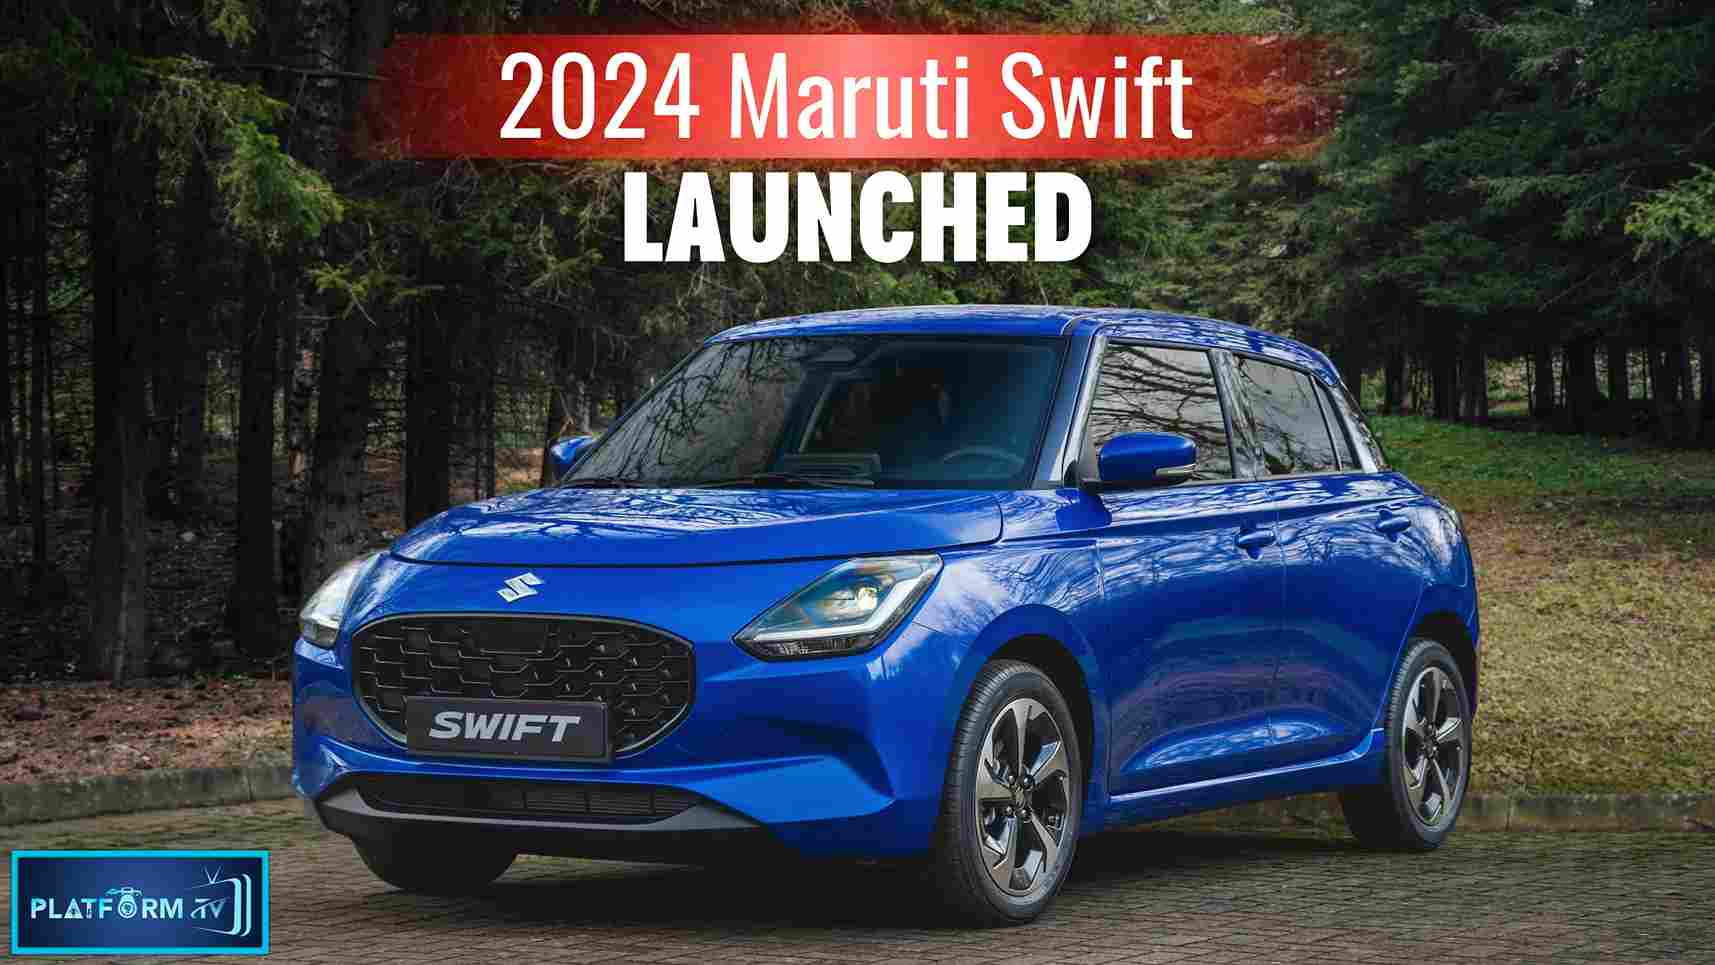 New Maruti Swift 2024 - Platform Tamil